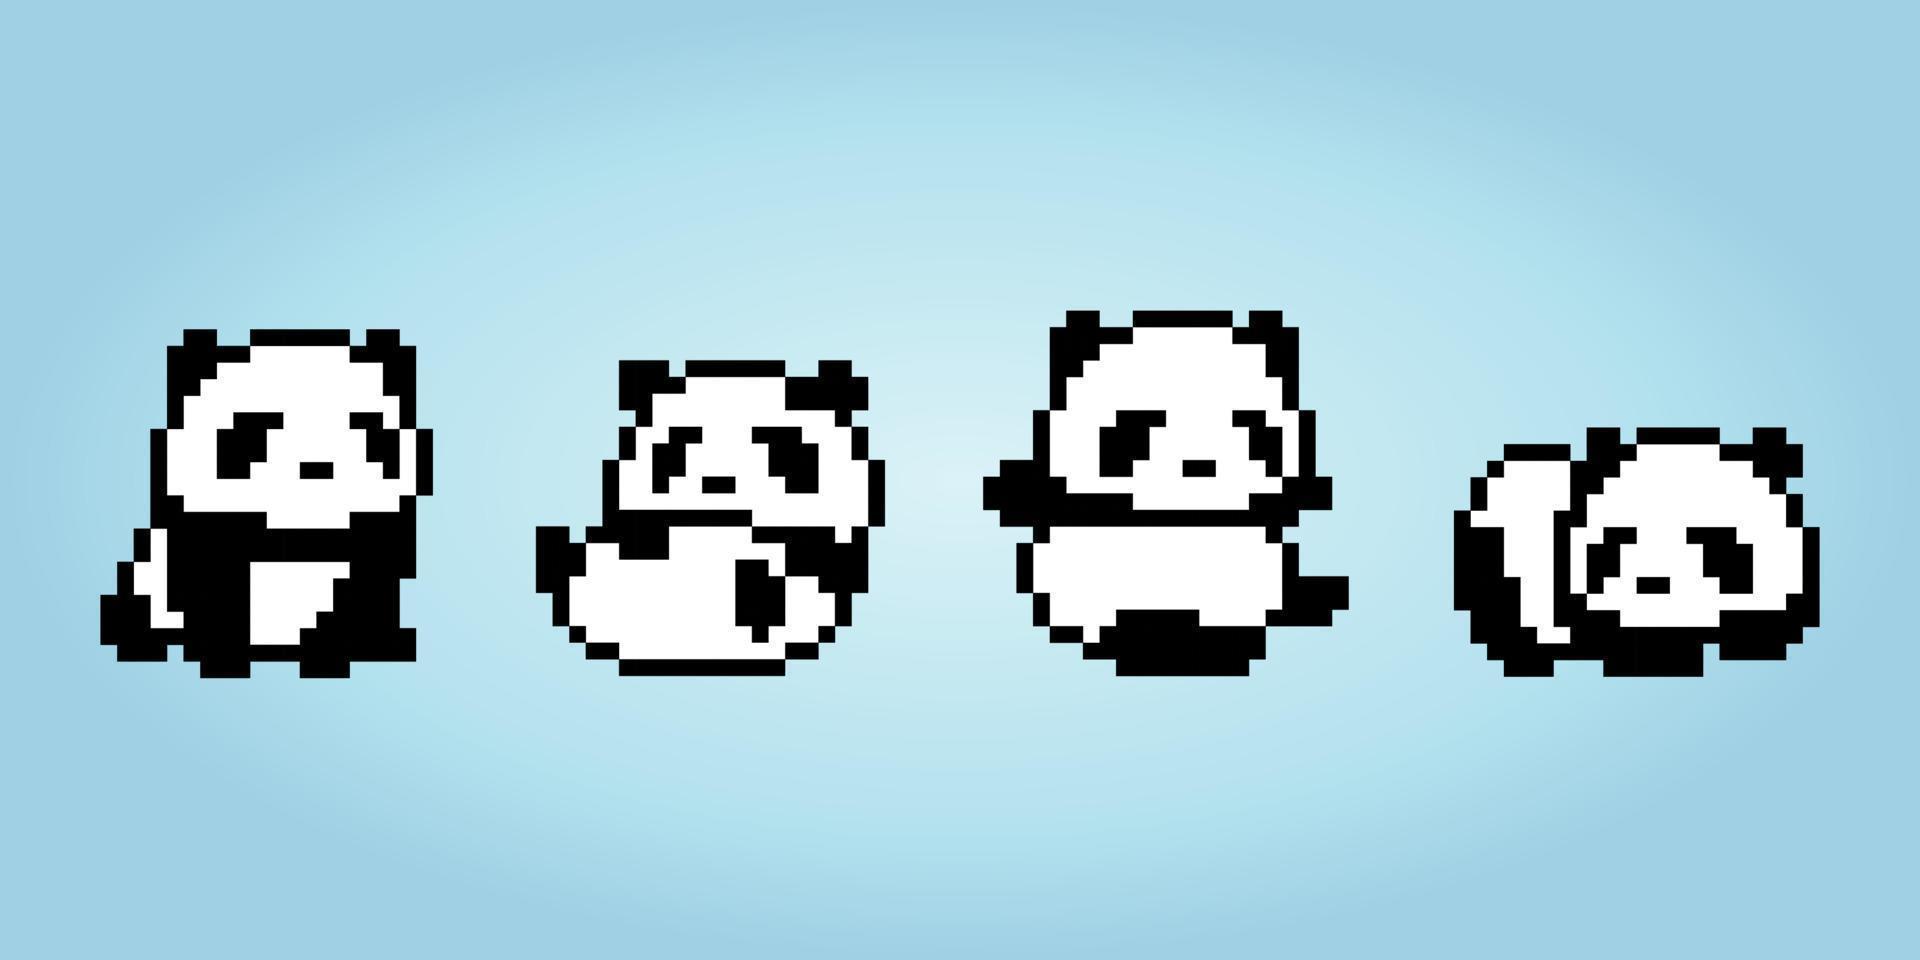 colección de píxeles de pandas de 8 bits. animales para activos de juego y patrones de punto de cruz en ilustraciones vectoriales. vector